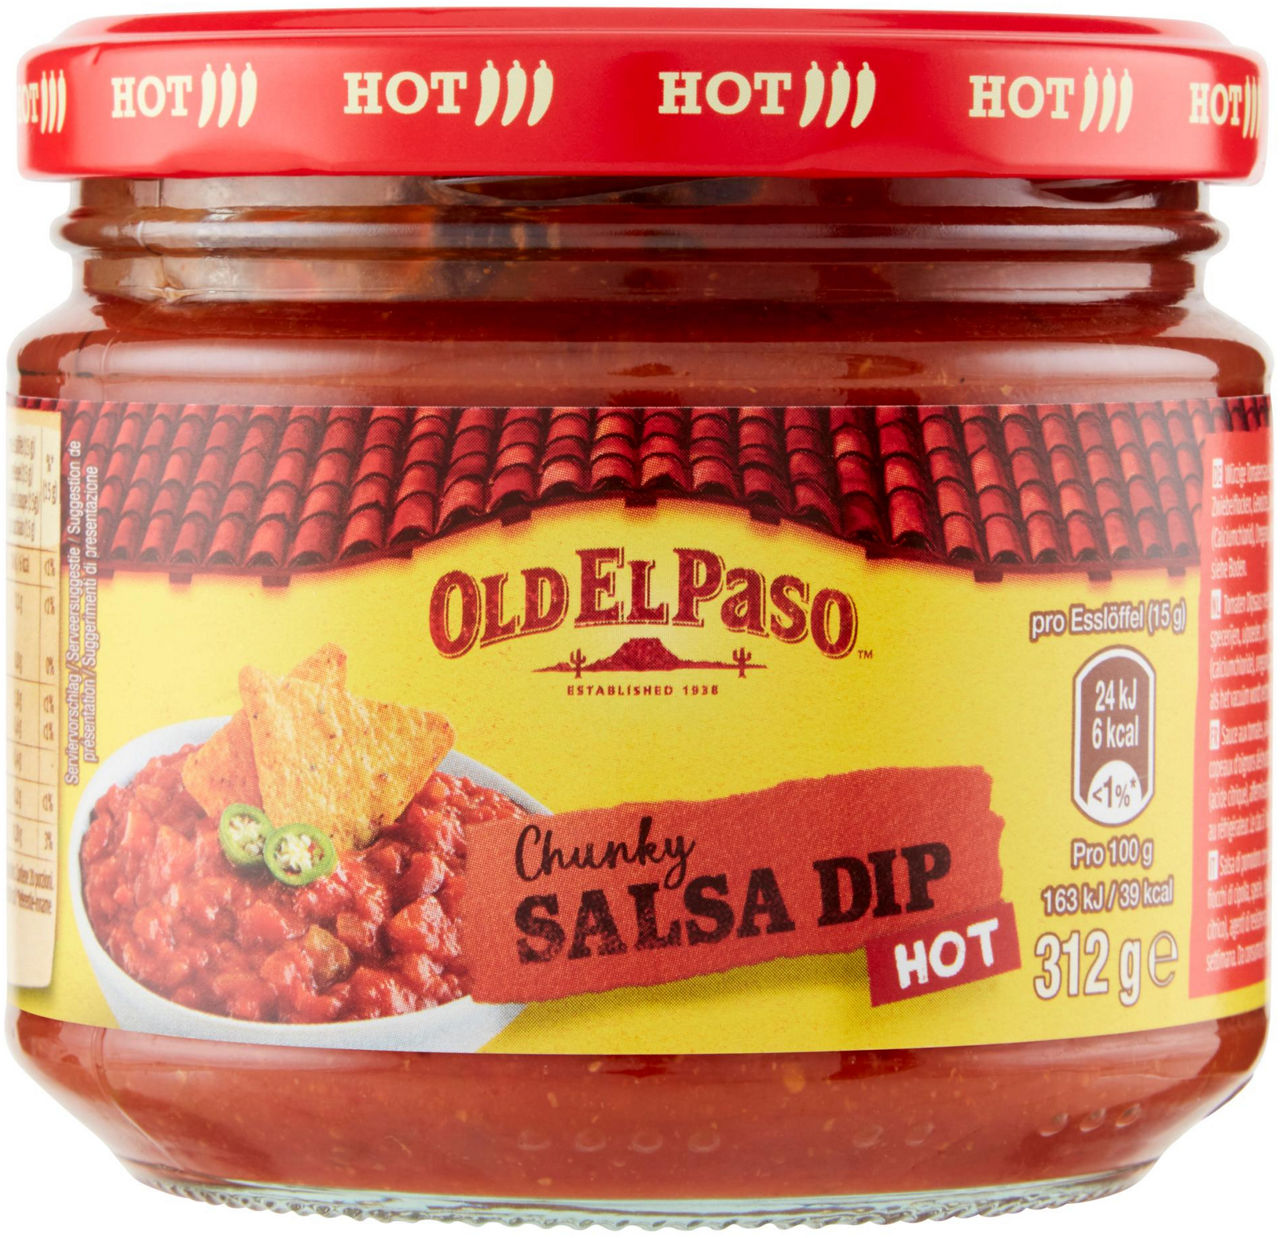 Salsa messicana dip hot old el paso 312g